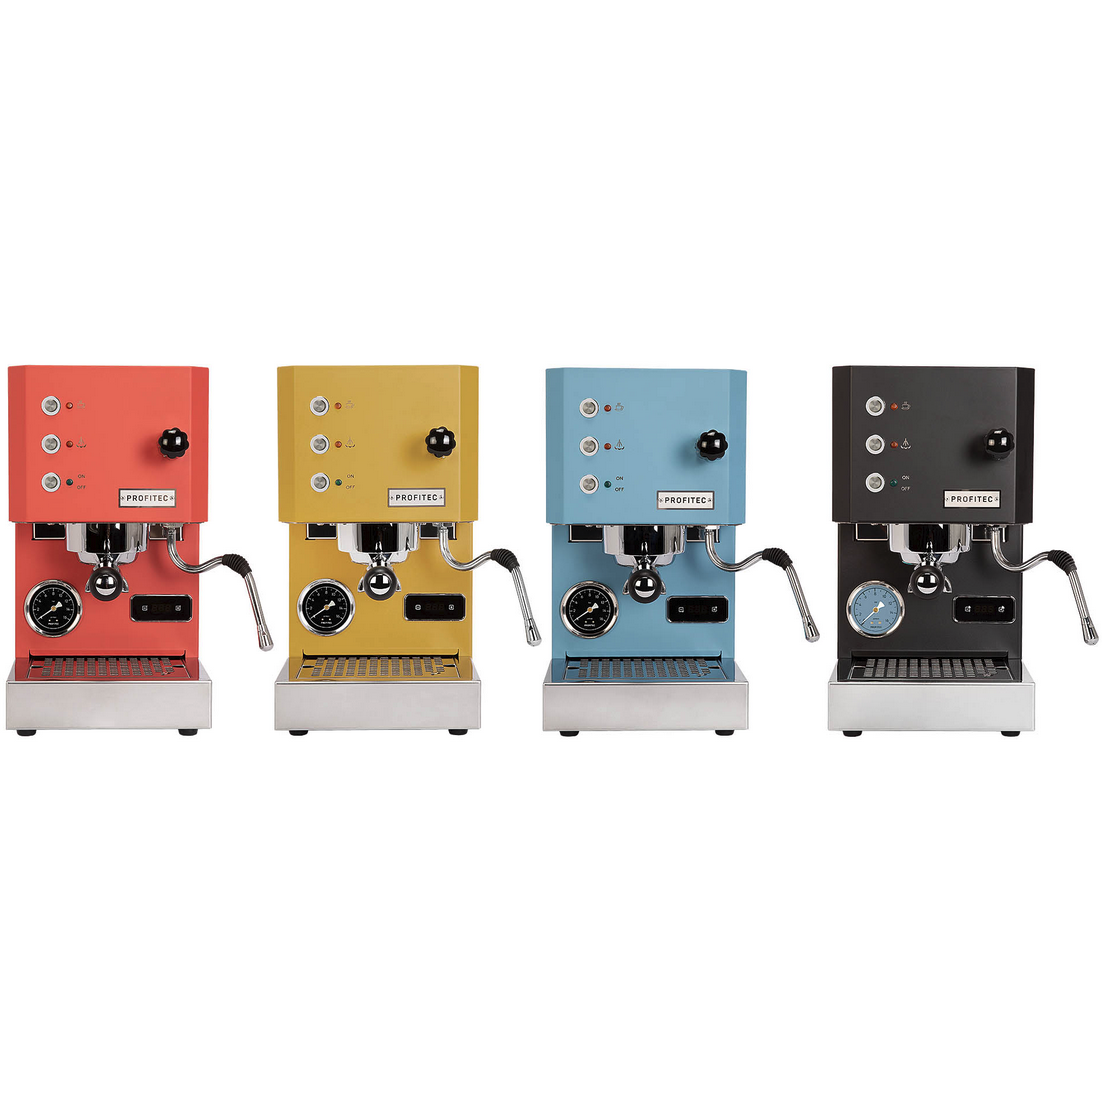 Profitec GO - Single Boiler Espresso Machine - PID - Colors